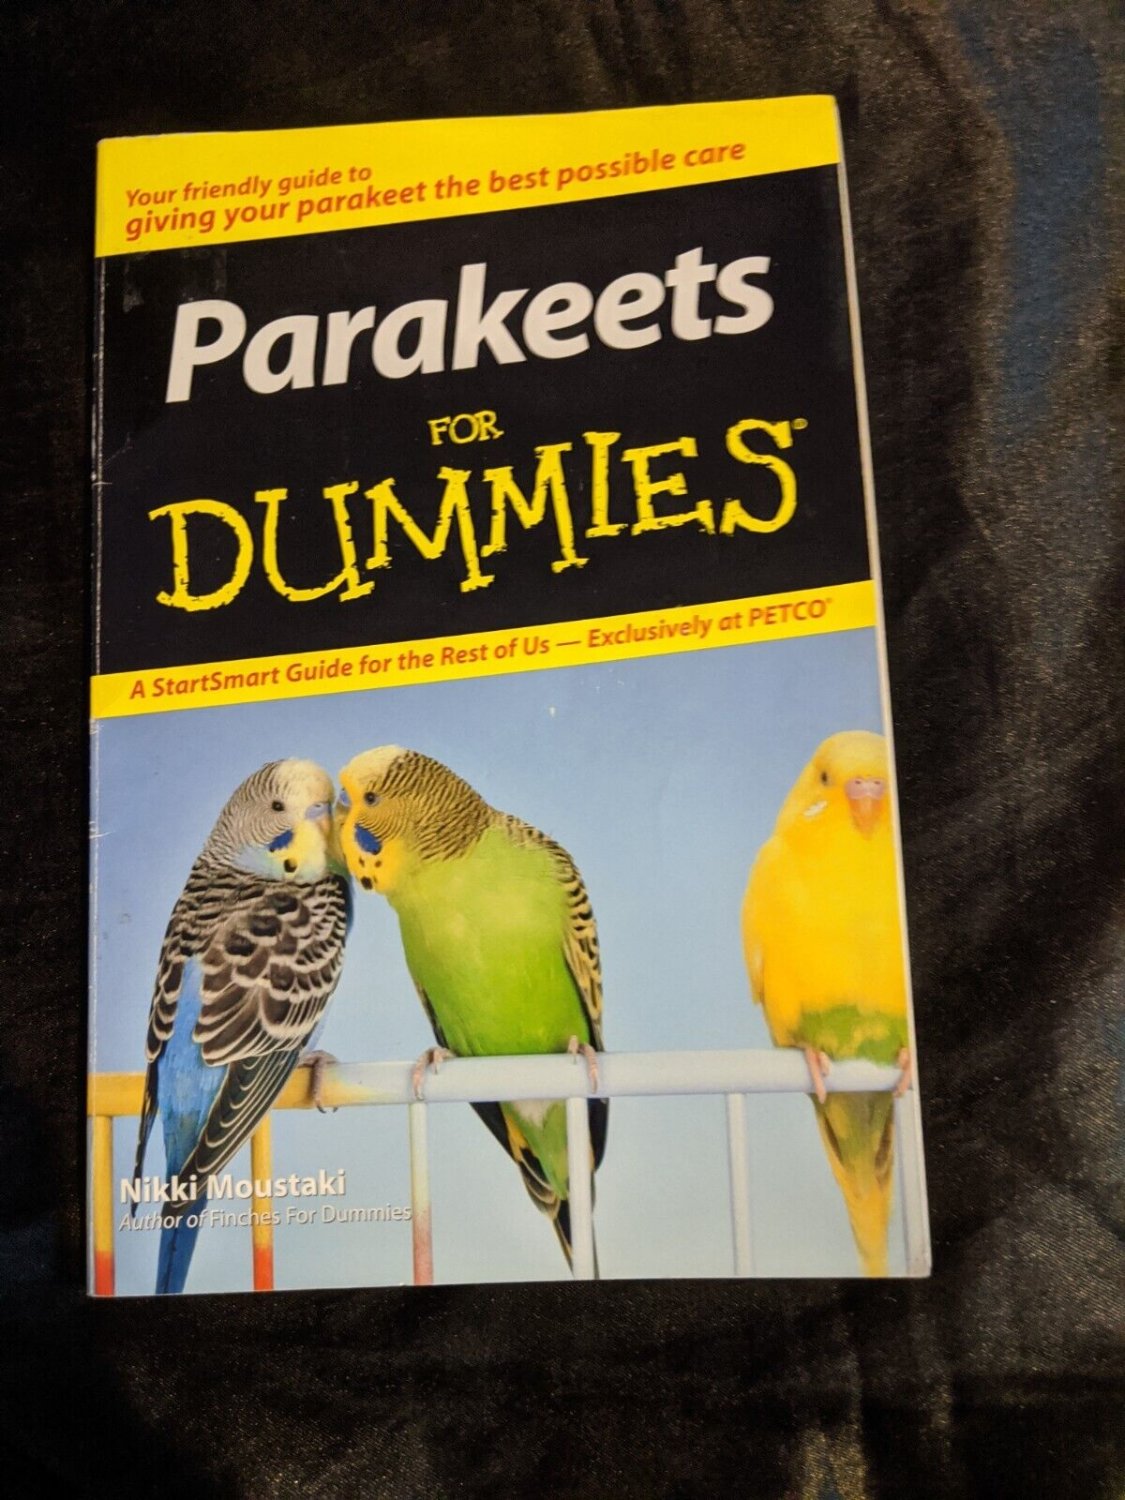 Parakeets For Dummies by Nikki Moustaki